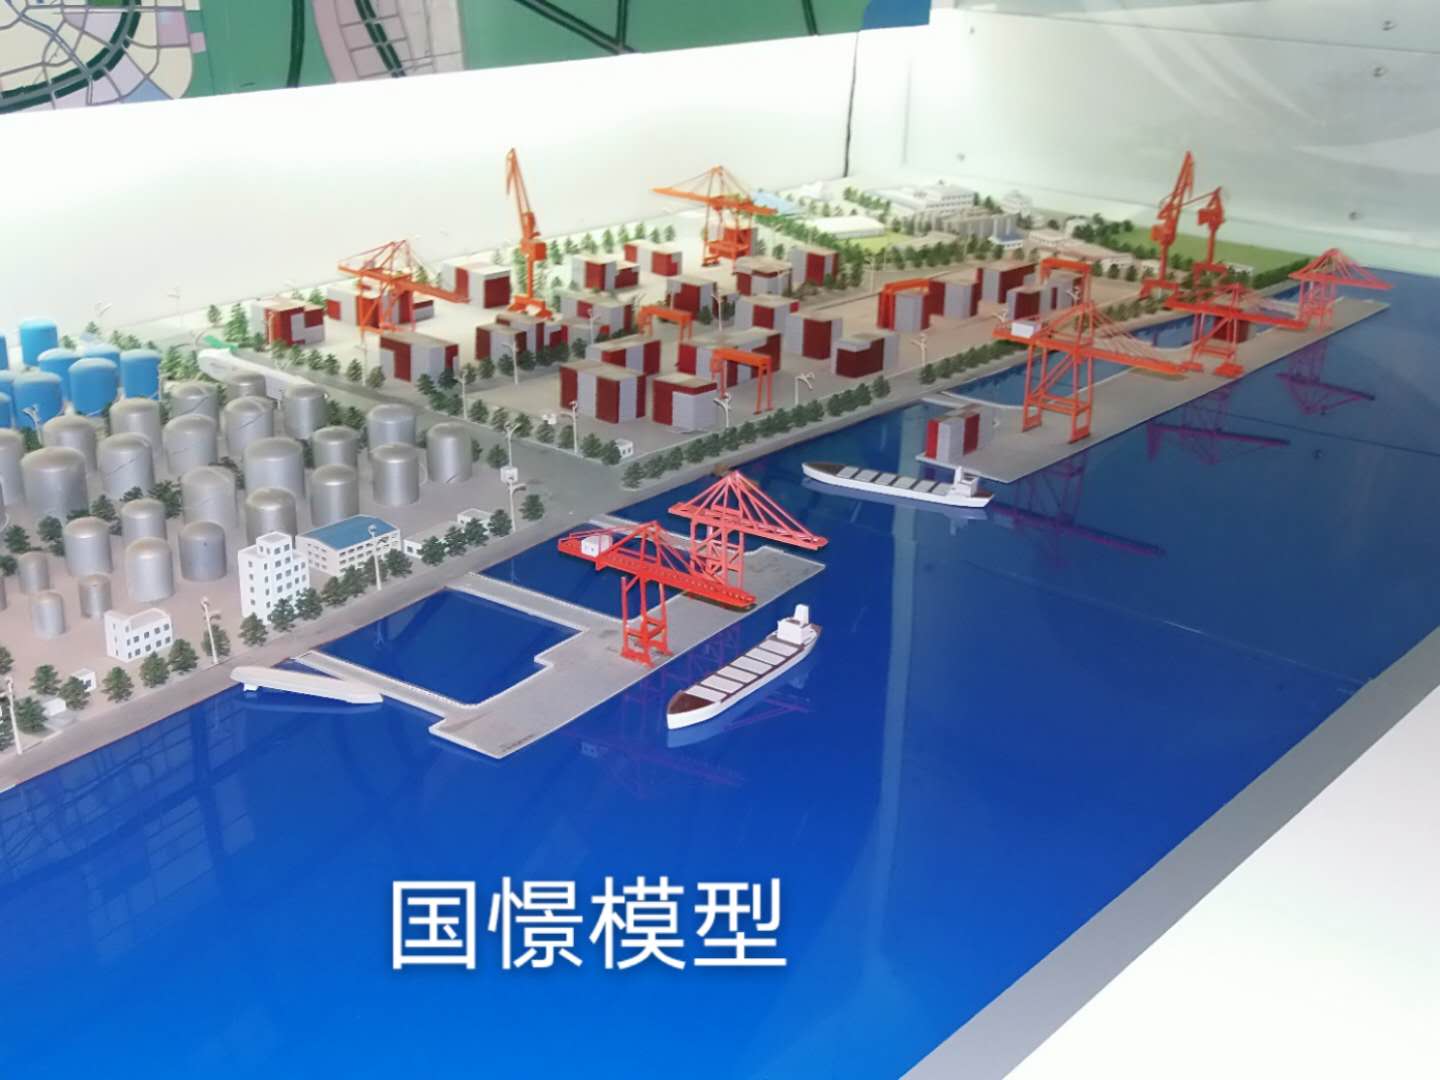 温宿县工业模型